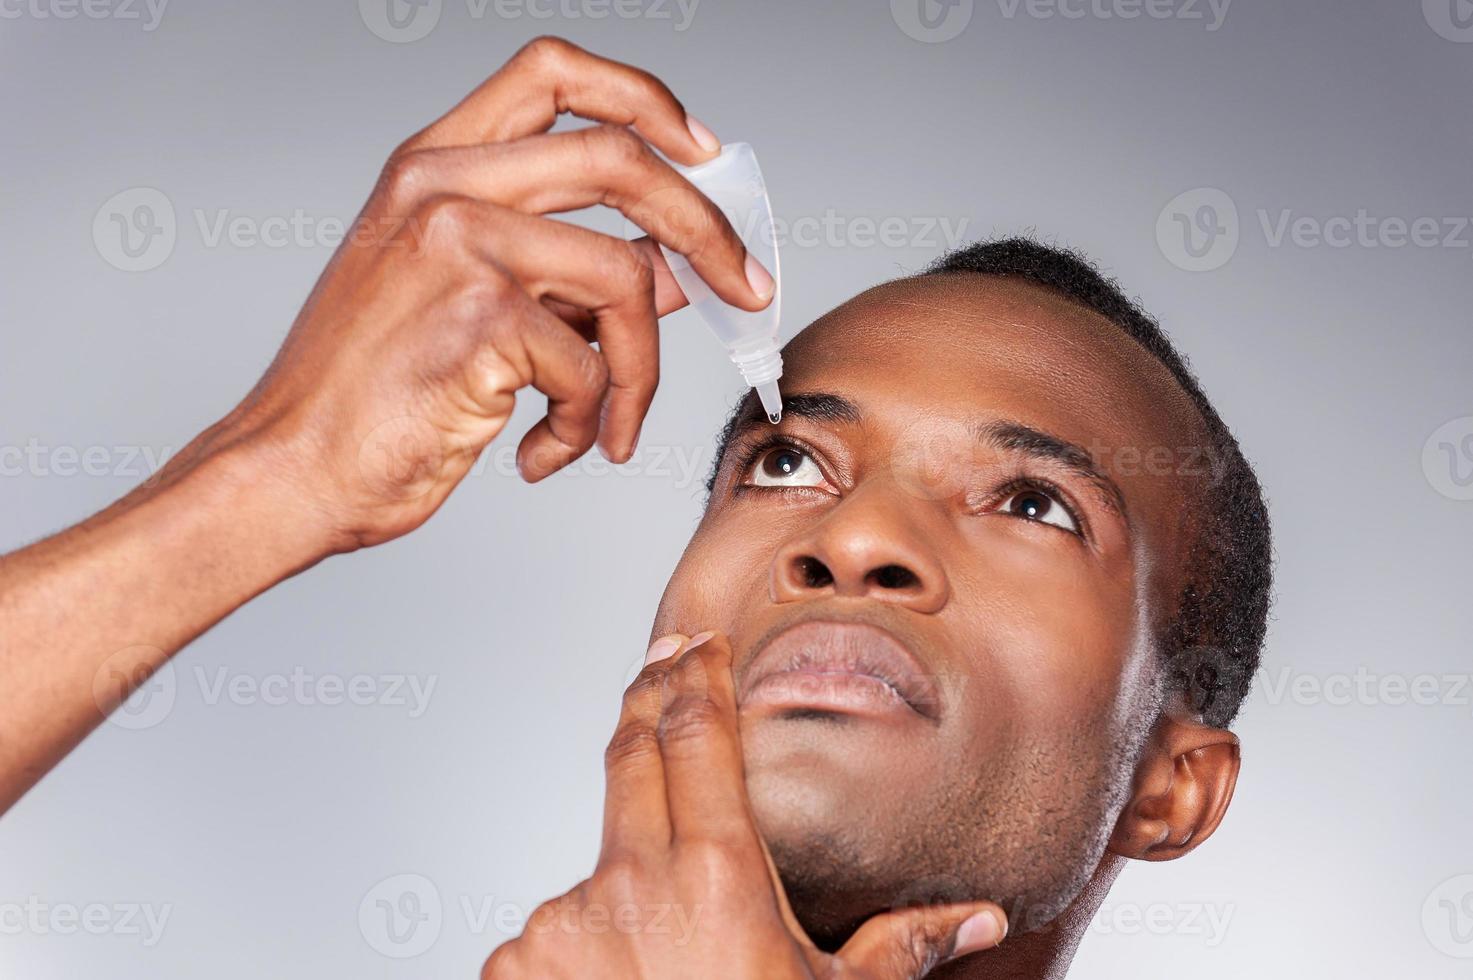 Mann tropft Auge. junger afrikanischer mann, der augentropfen anwendet, während er vor grauem hintergrund steht foto